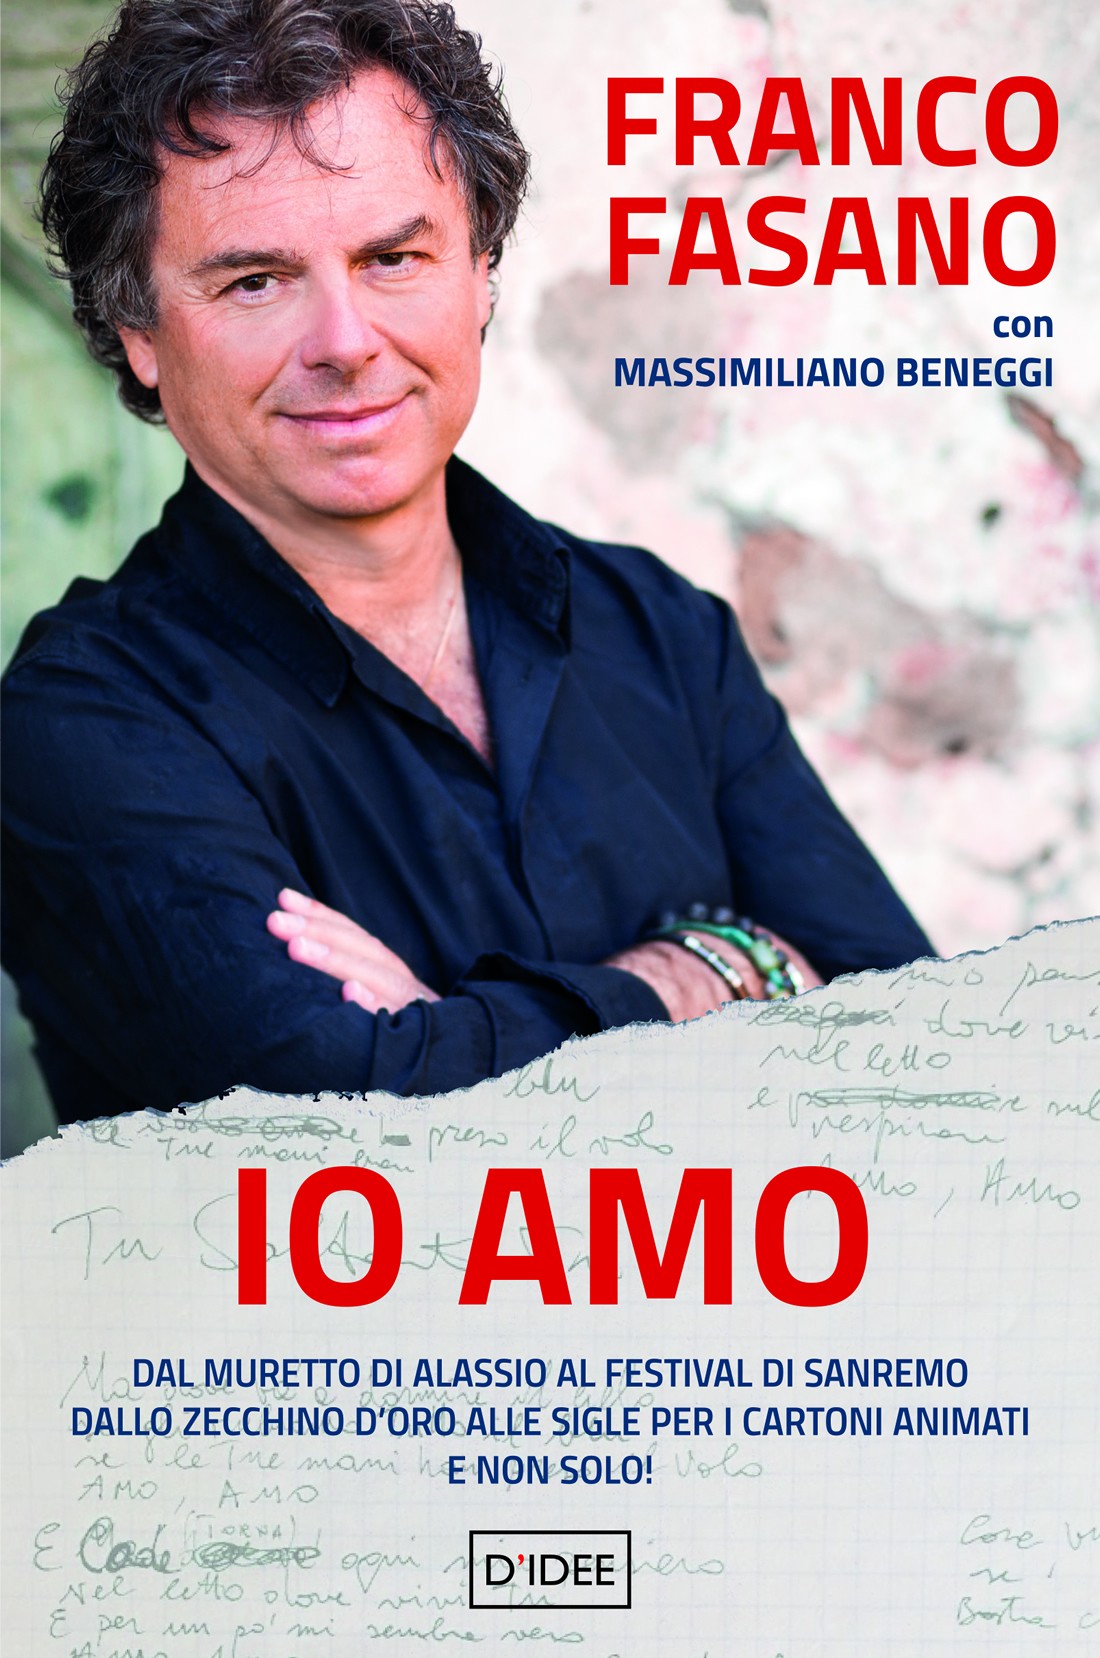 Franco Fasano all’Antoniano per presentare il libro “Io Amo”